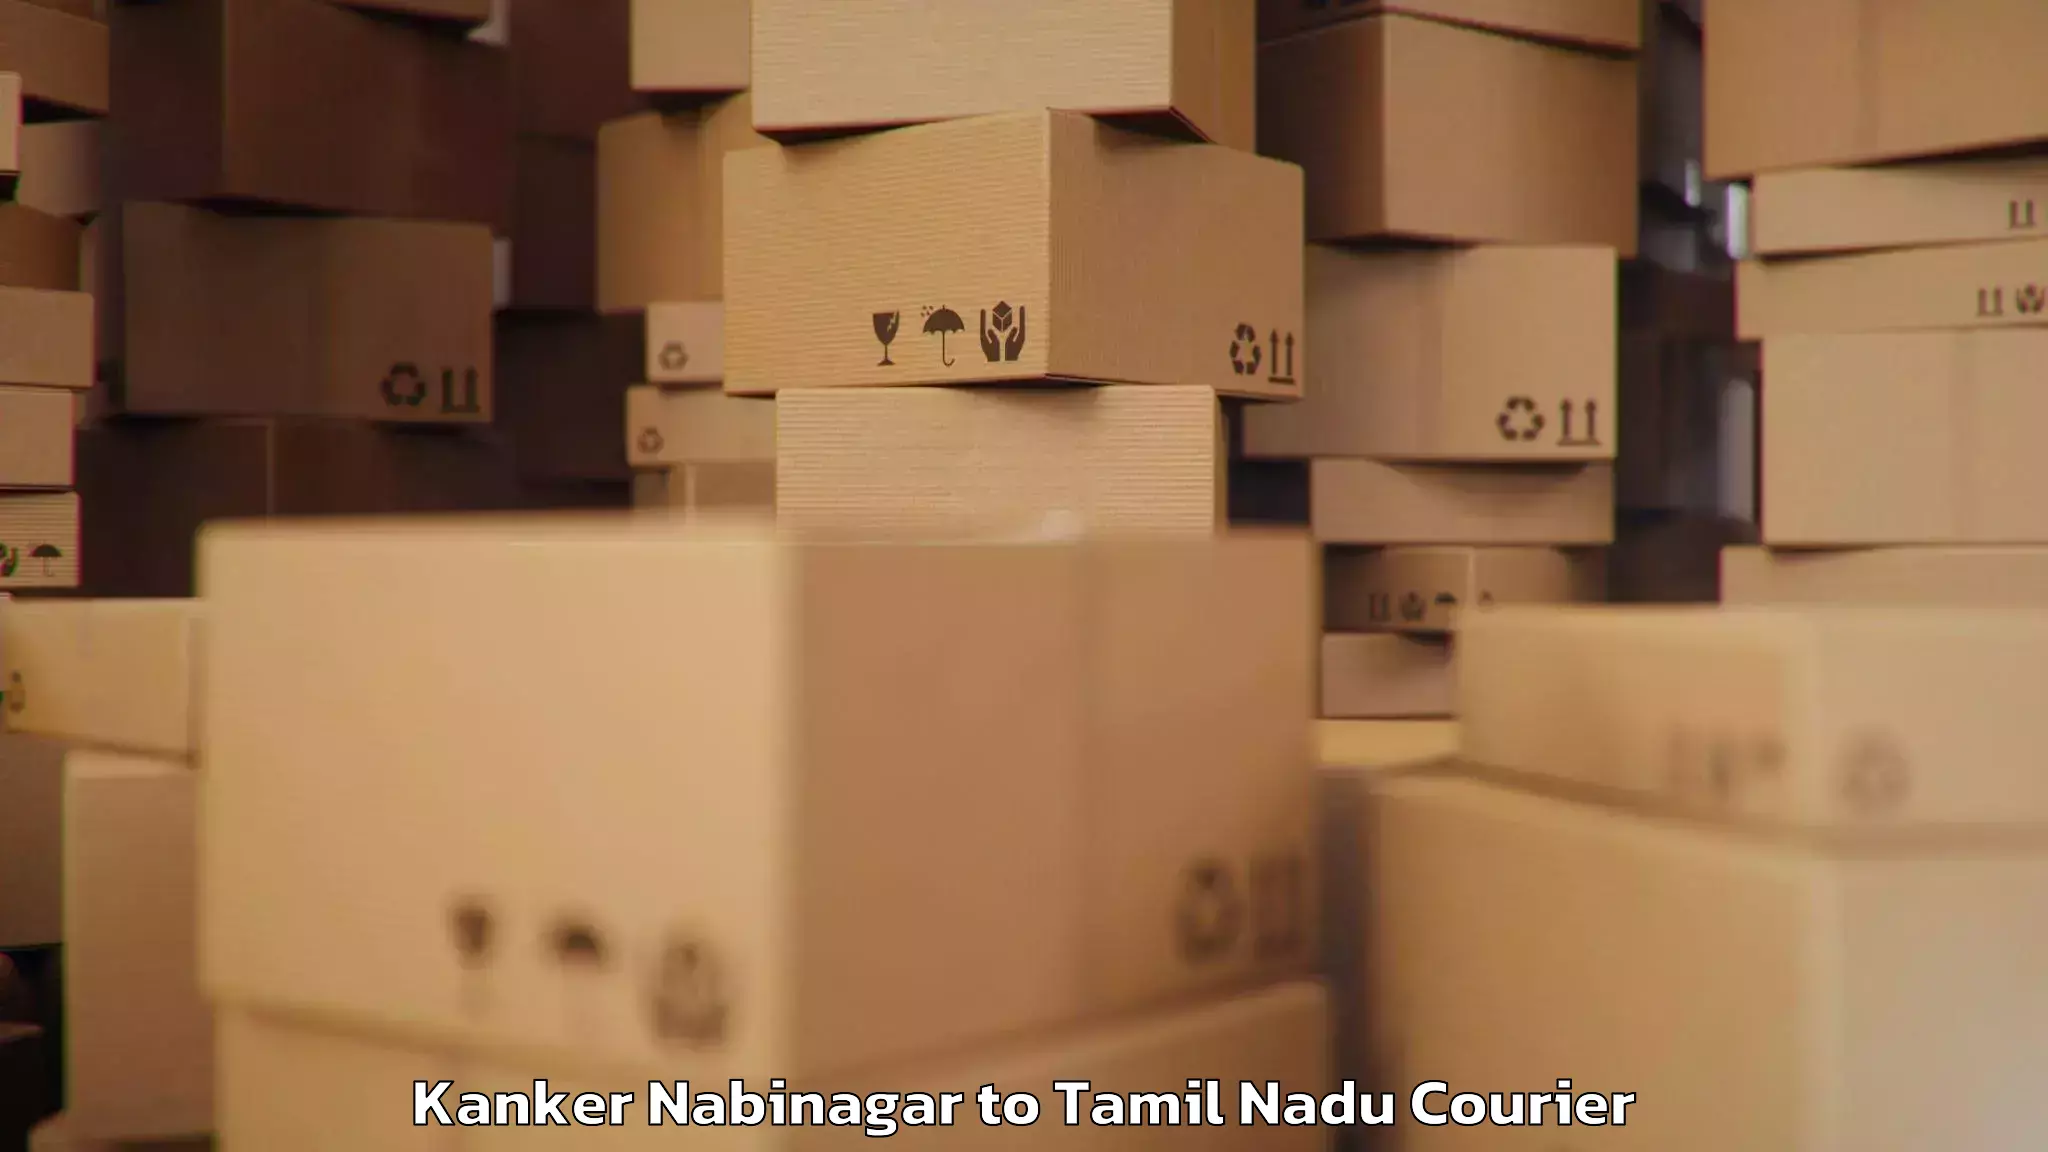 Safe luggage delivery Kanker Nabinagar to Viluppuram